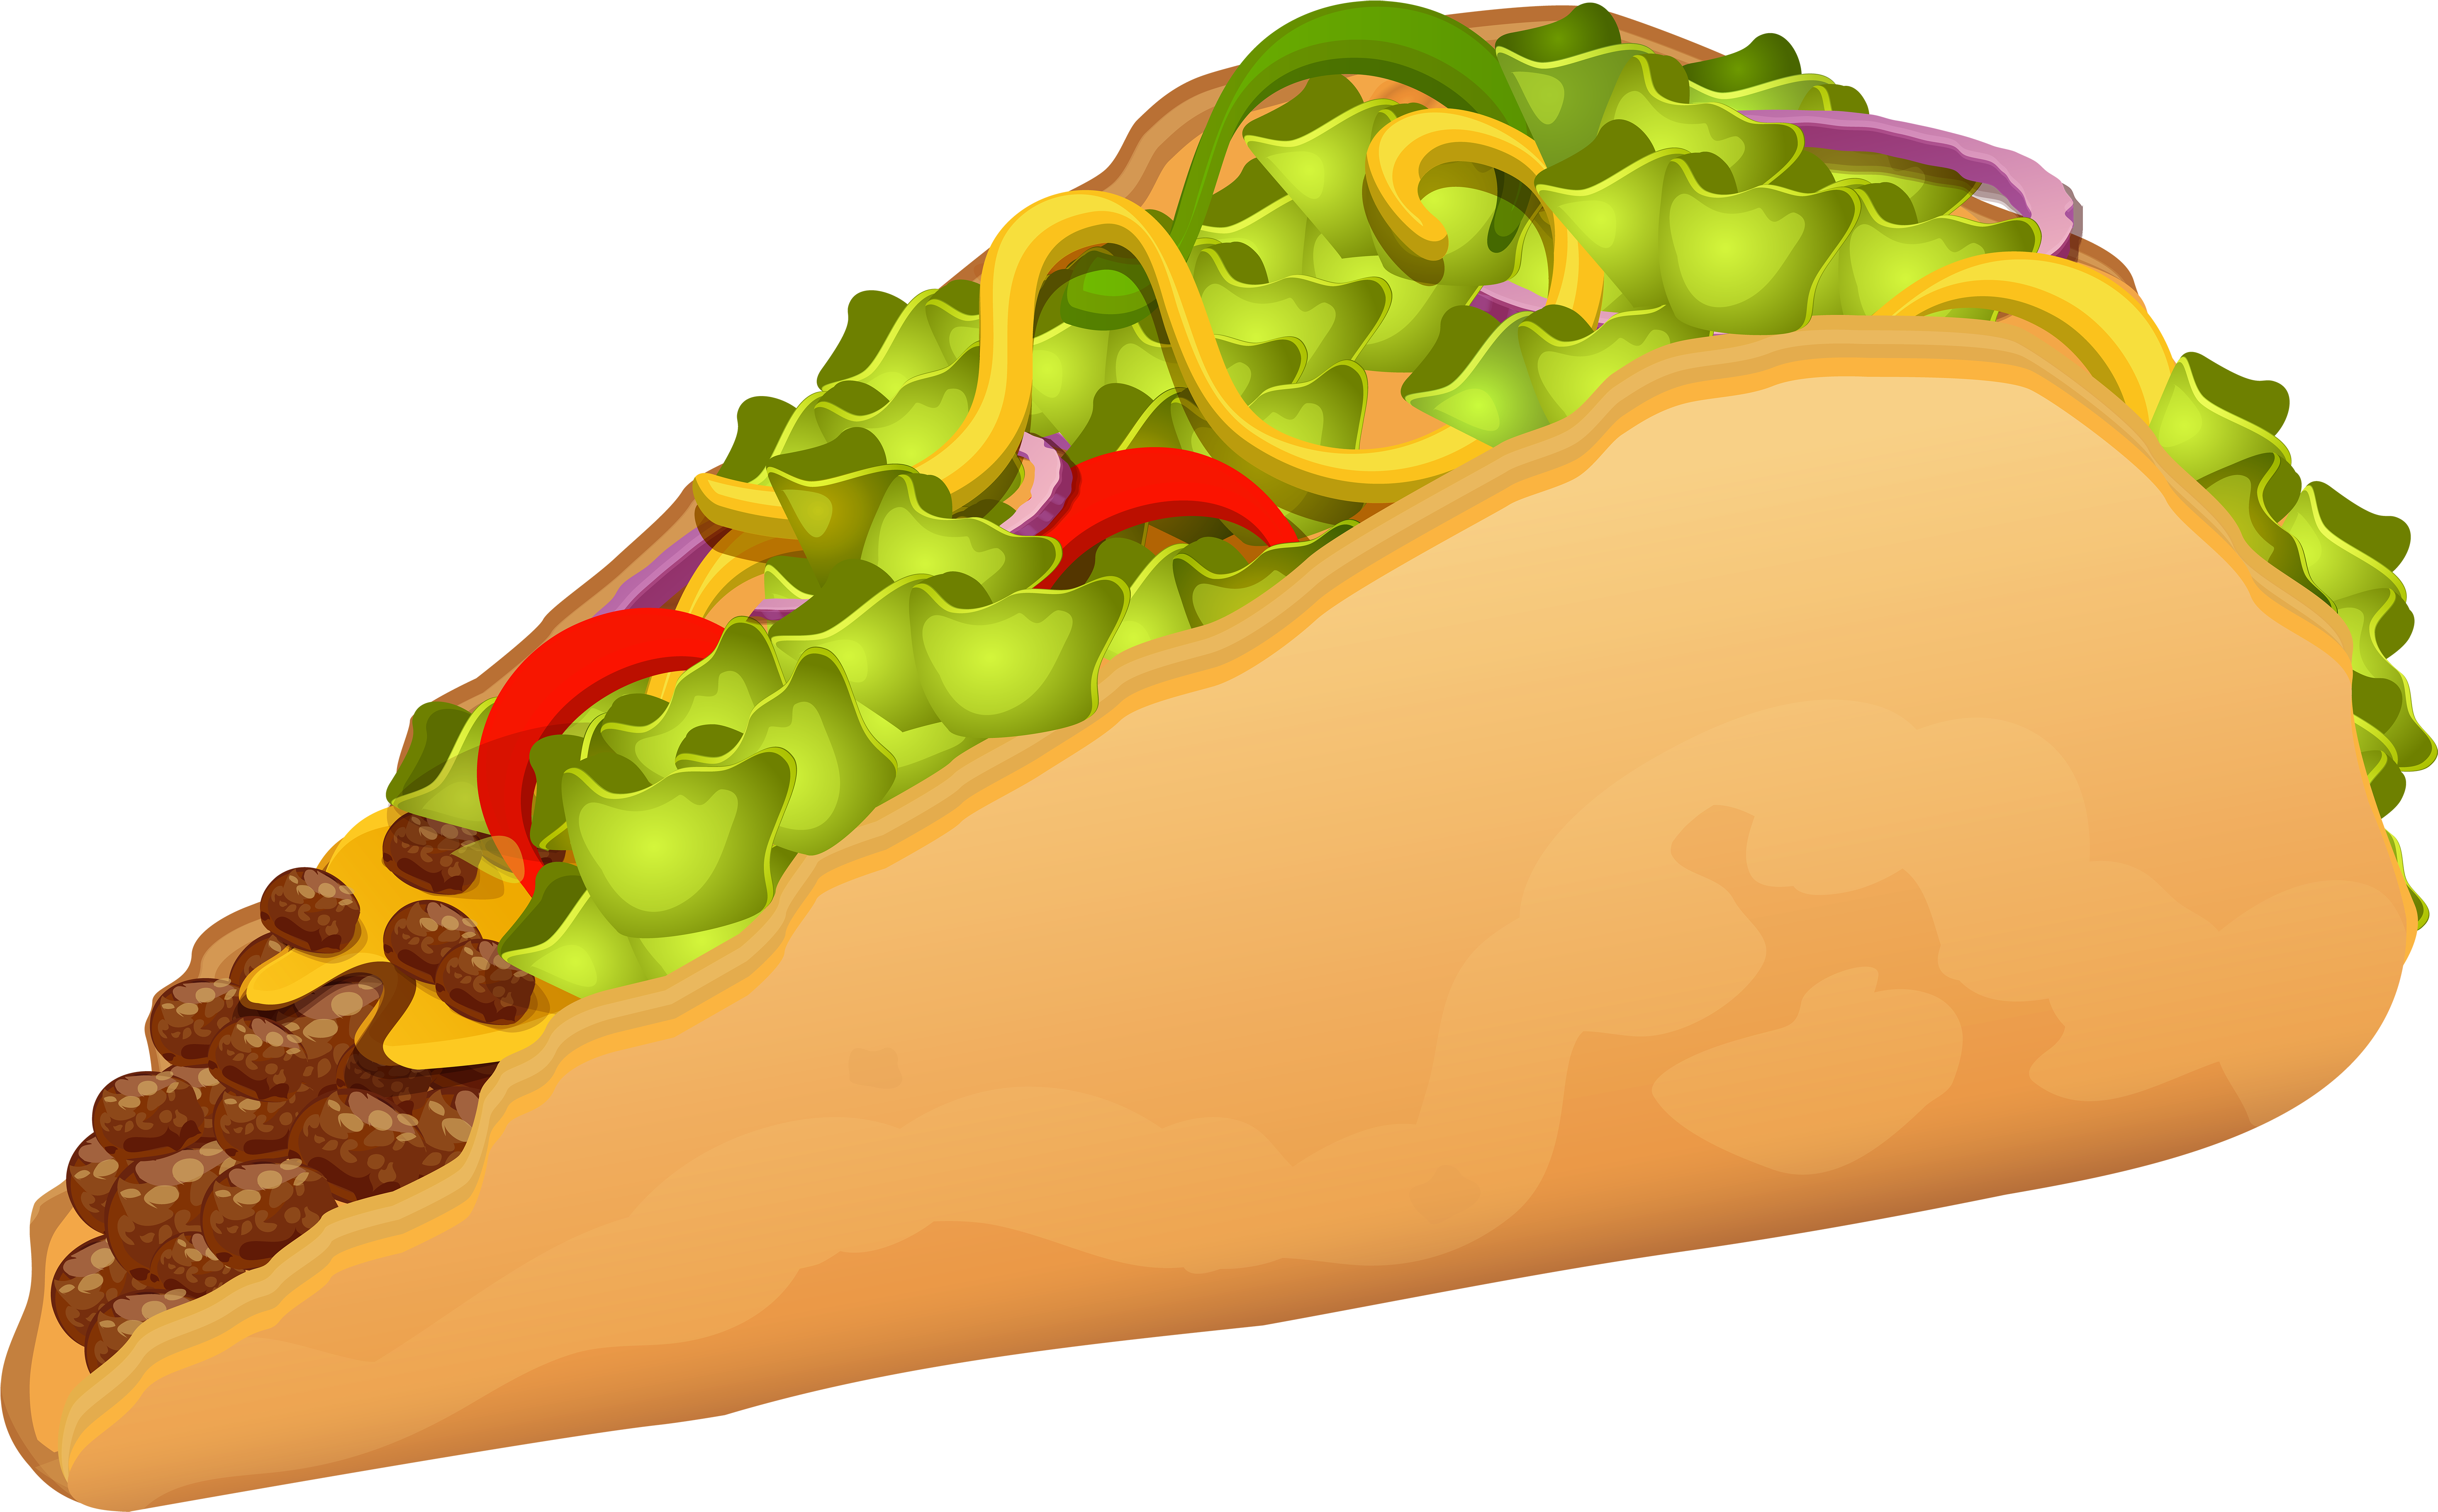 Hot Dog Doner Kebab Fast Food Junk Food